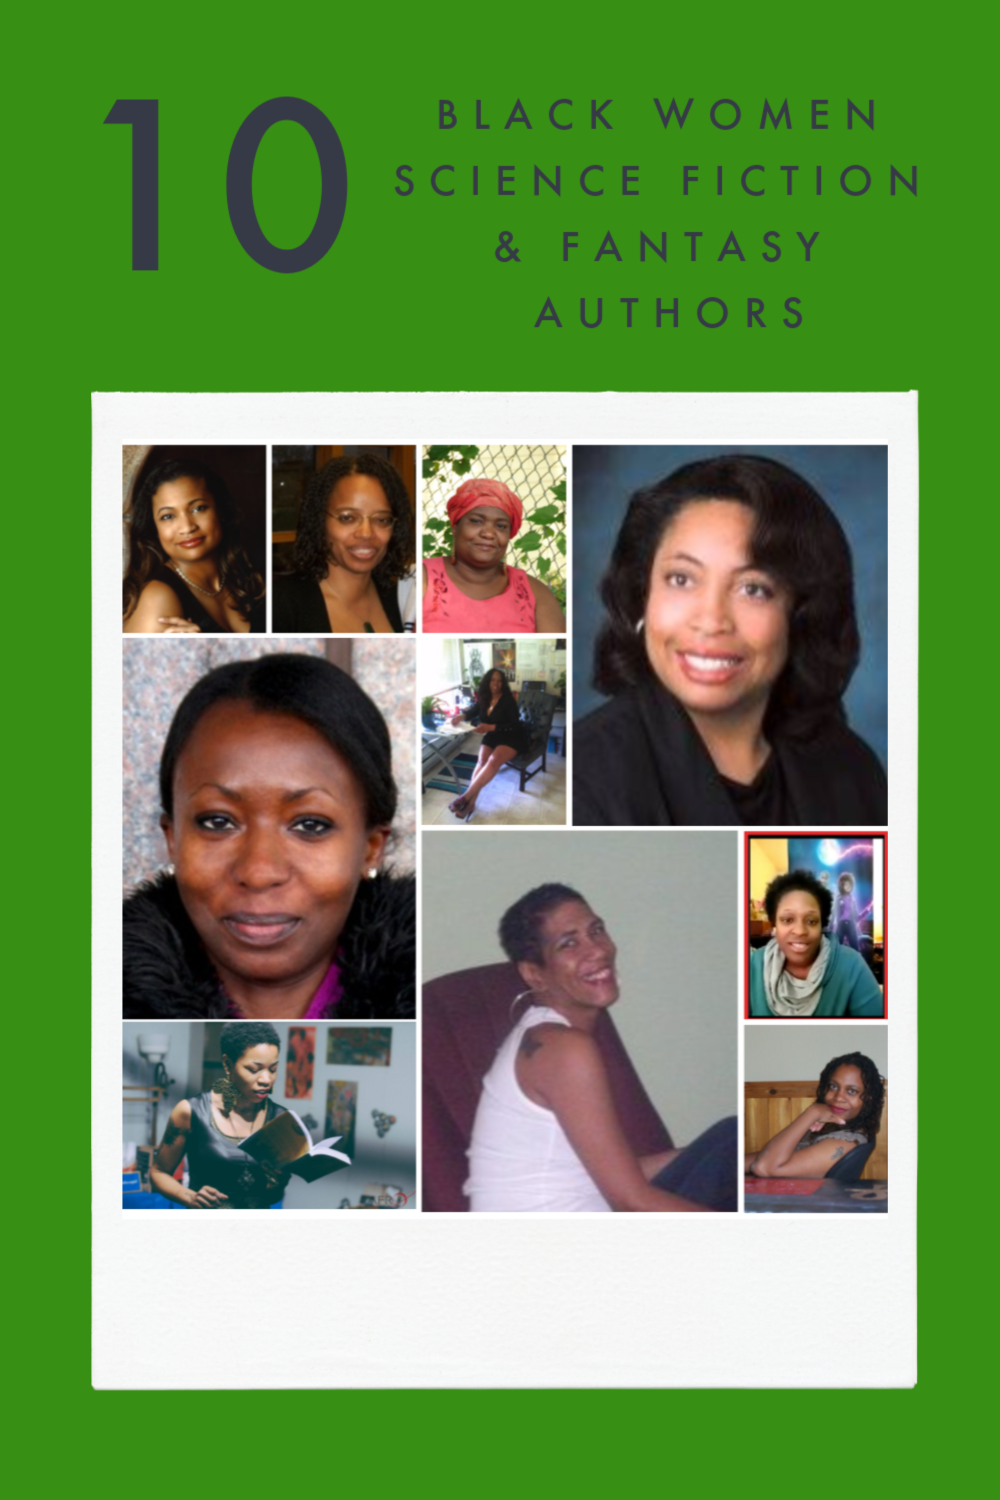 Ten Black Women Science Fiction & Fantasy Authors